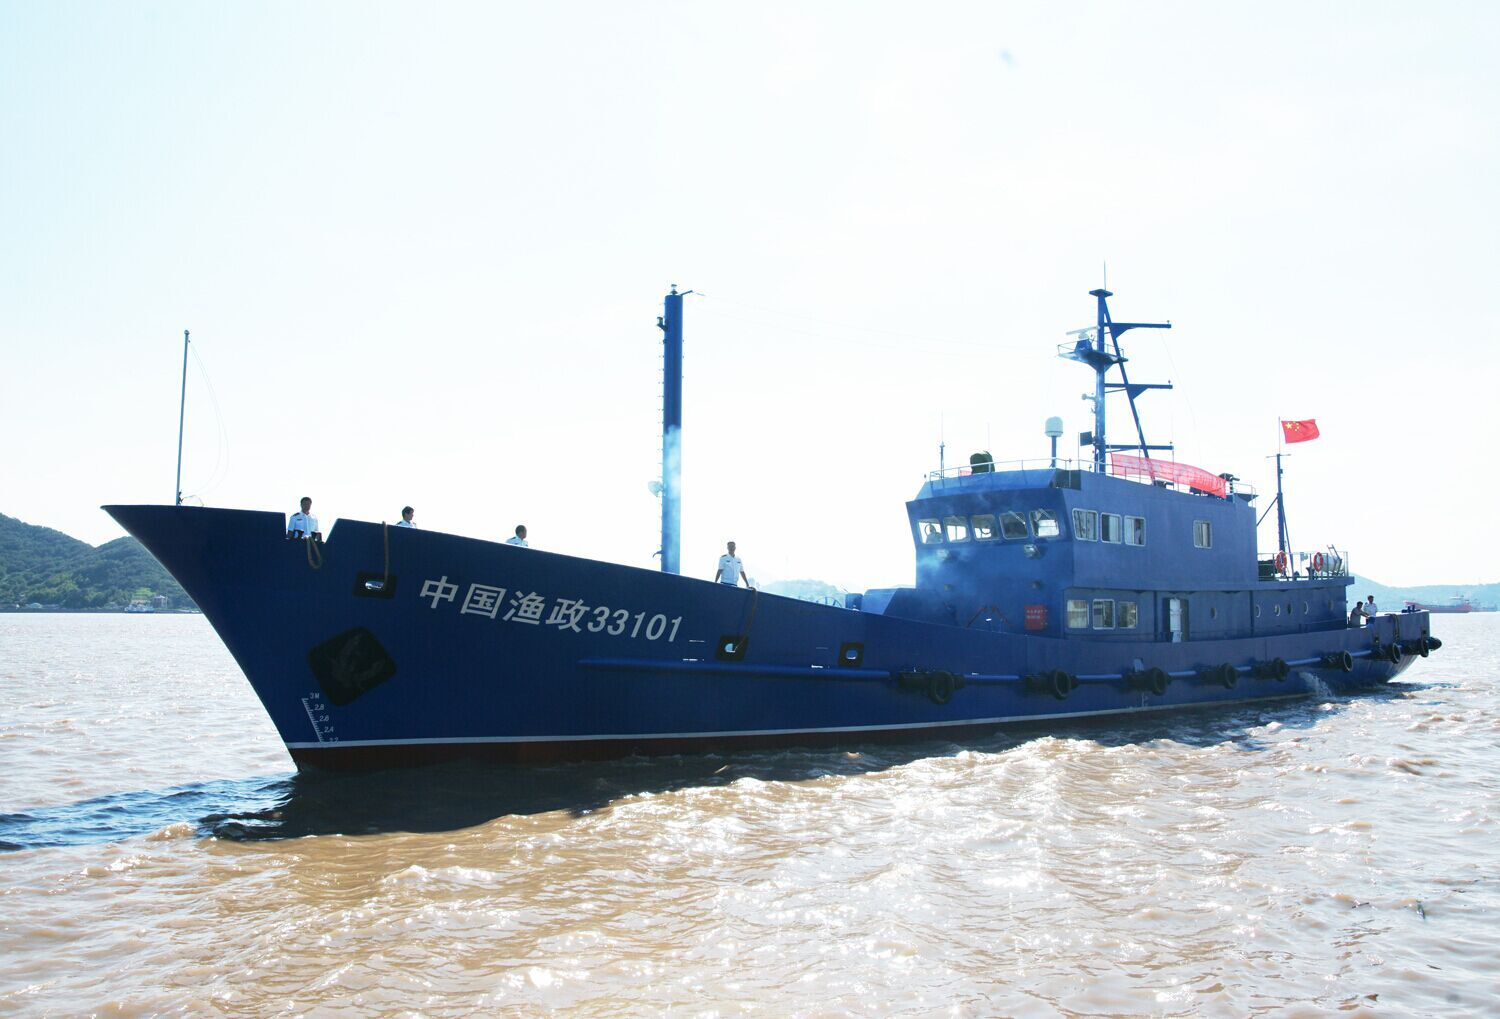 越南海警船正突围攻中国海洋石油981 仍对峙中!图_中国海警3411船_中国海警2401船